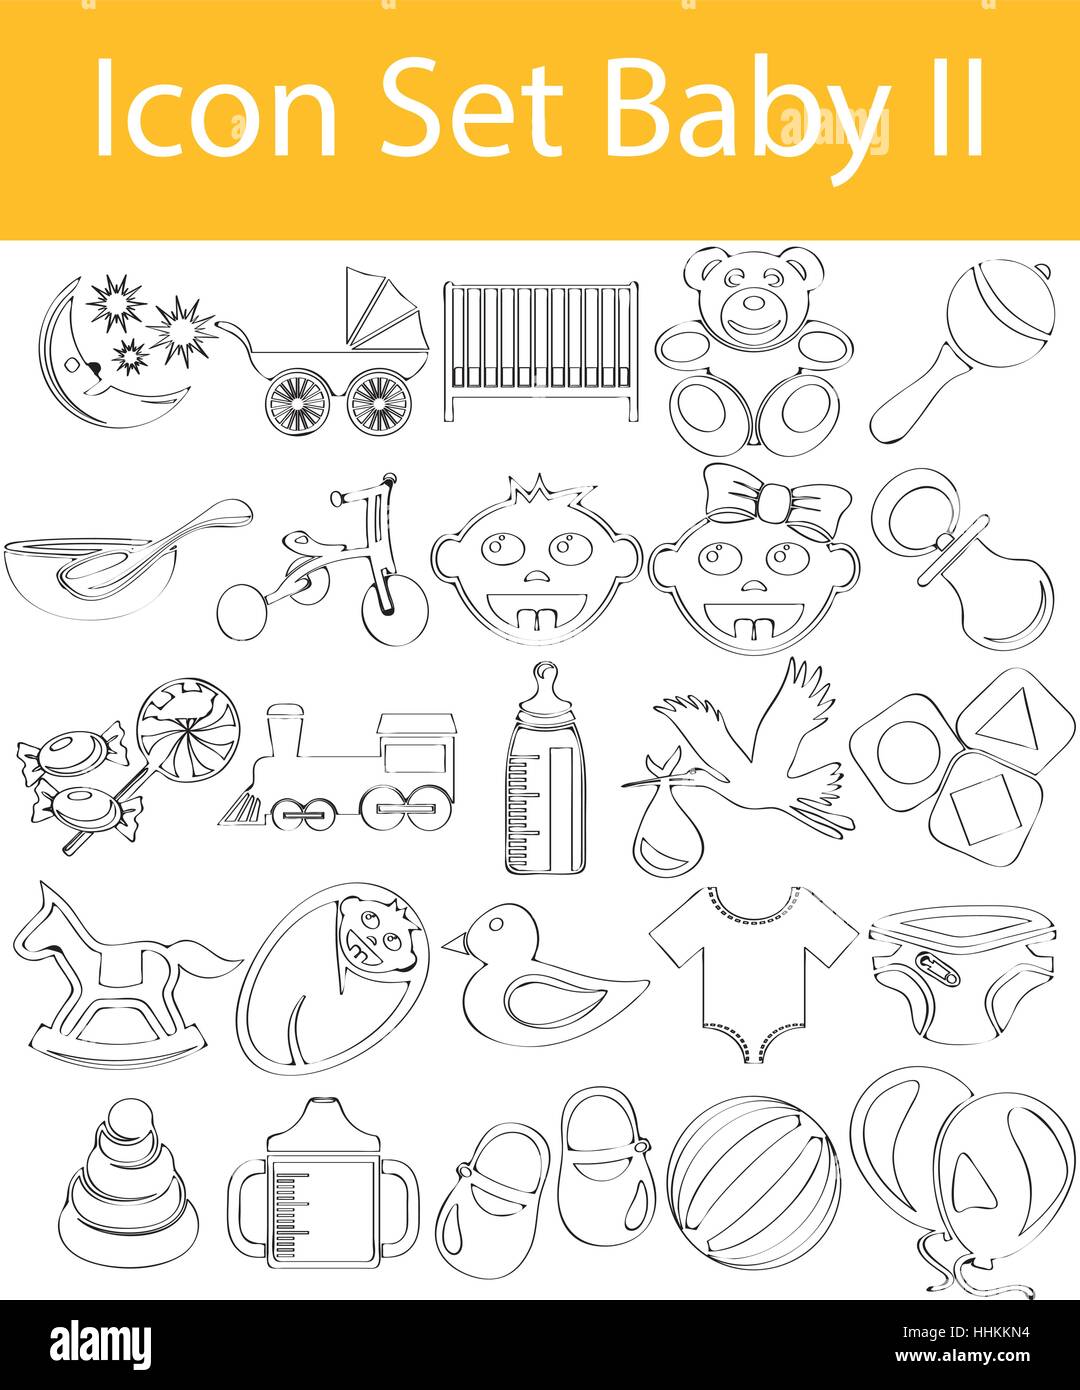 Appelée Doodle bordée Icon Set Baby II avec 25 icônes pour l'utilisation créative en design graphique Illustration de Vecteur